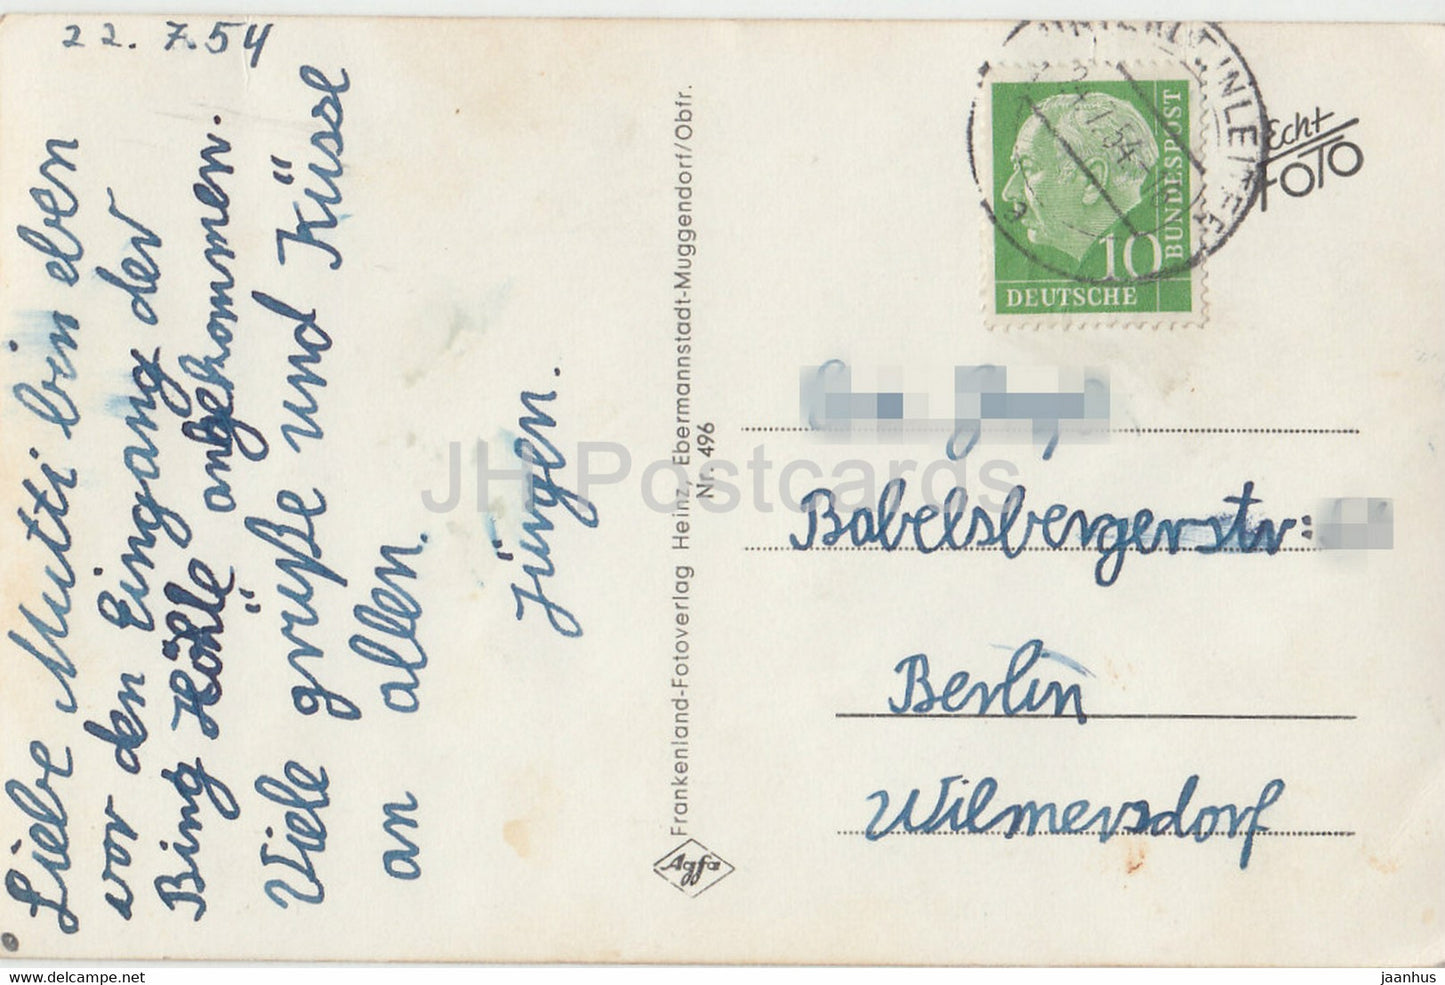 Bing Hohle - Streitberg - Venusgrotte - Höhle - 496 - alte Postkarte - 1954 - Deutschland - gebraucht